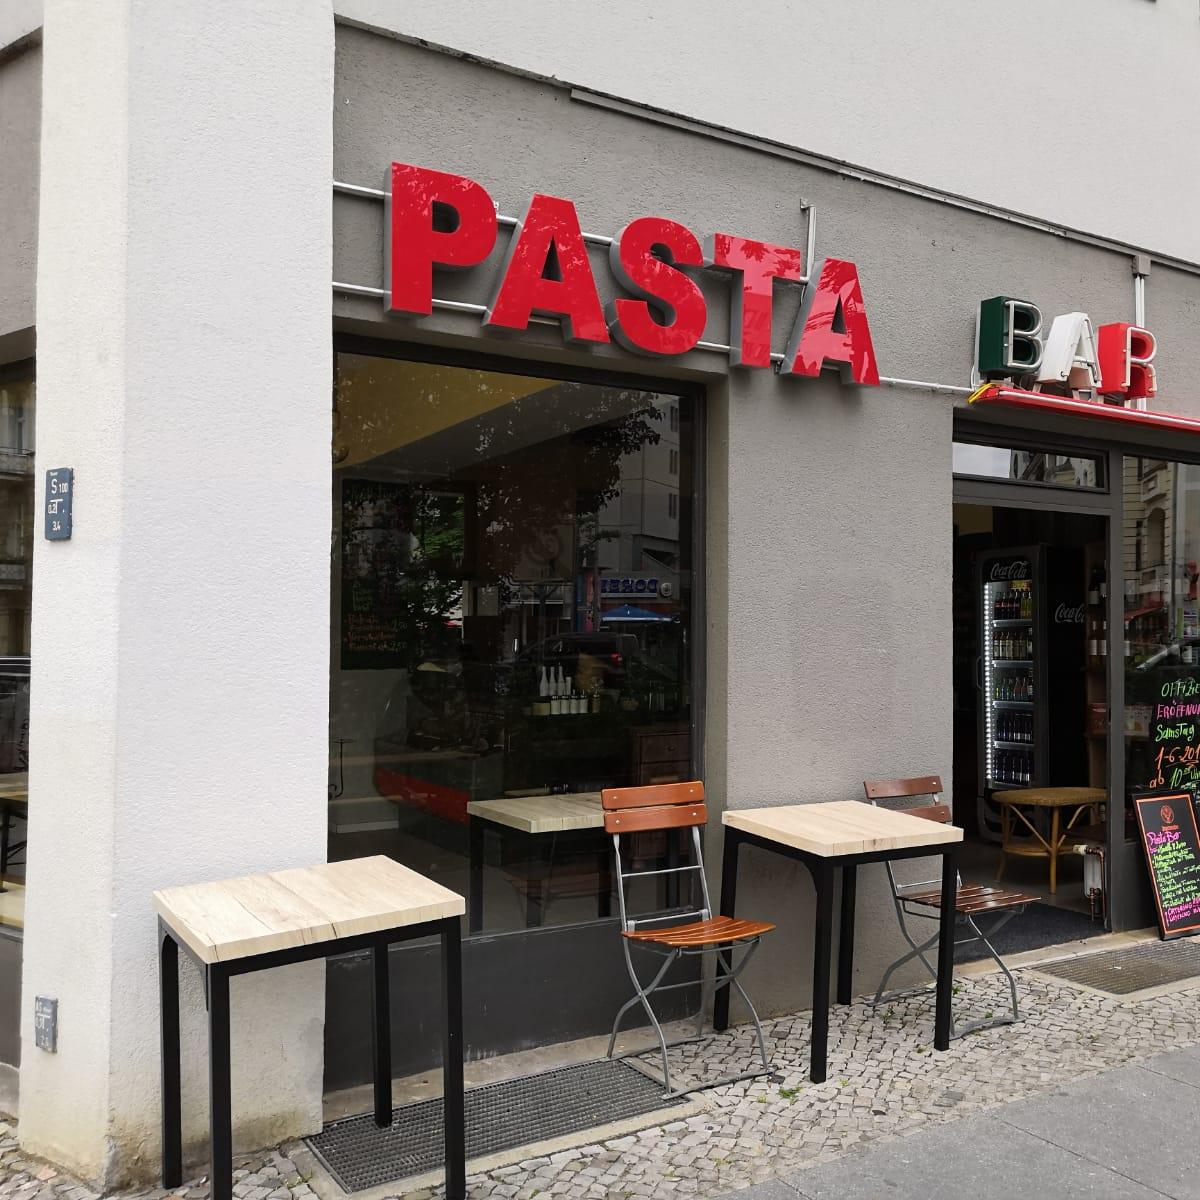 Restaurant "Pasta Bar Italiano" in Berlin